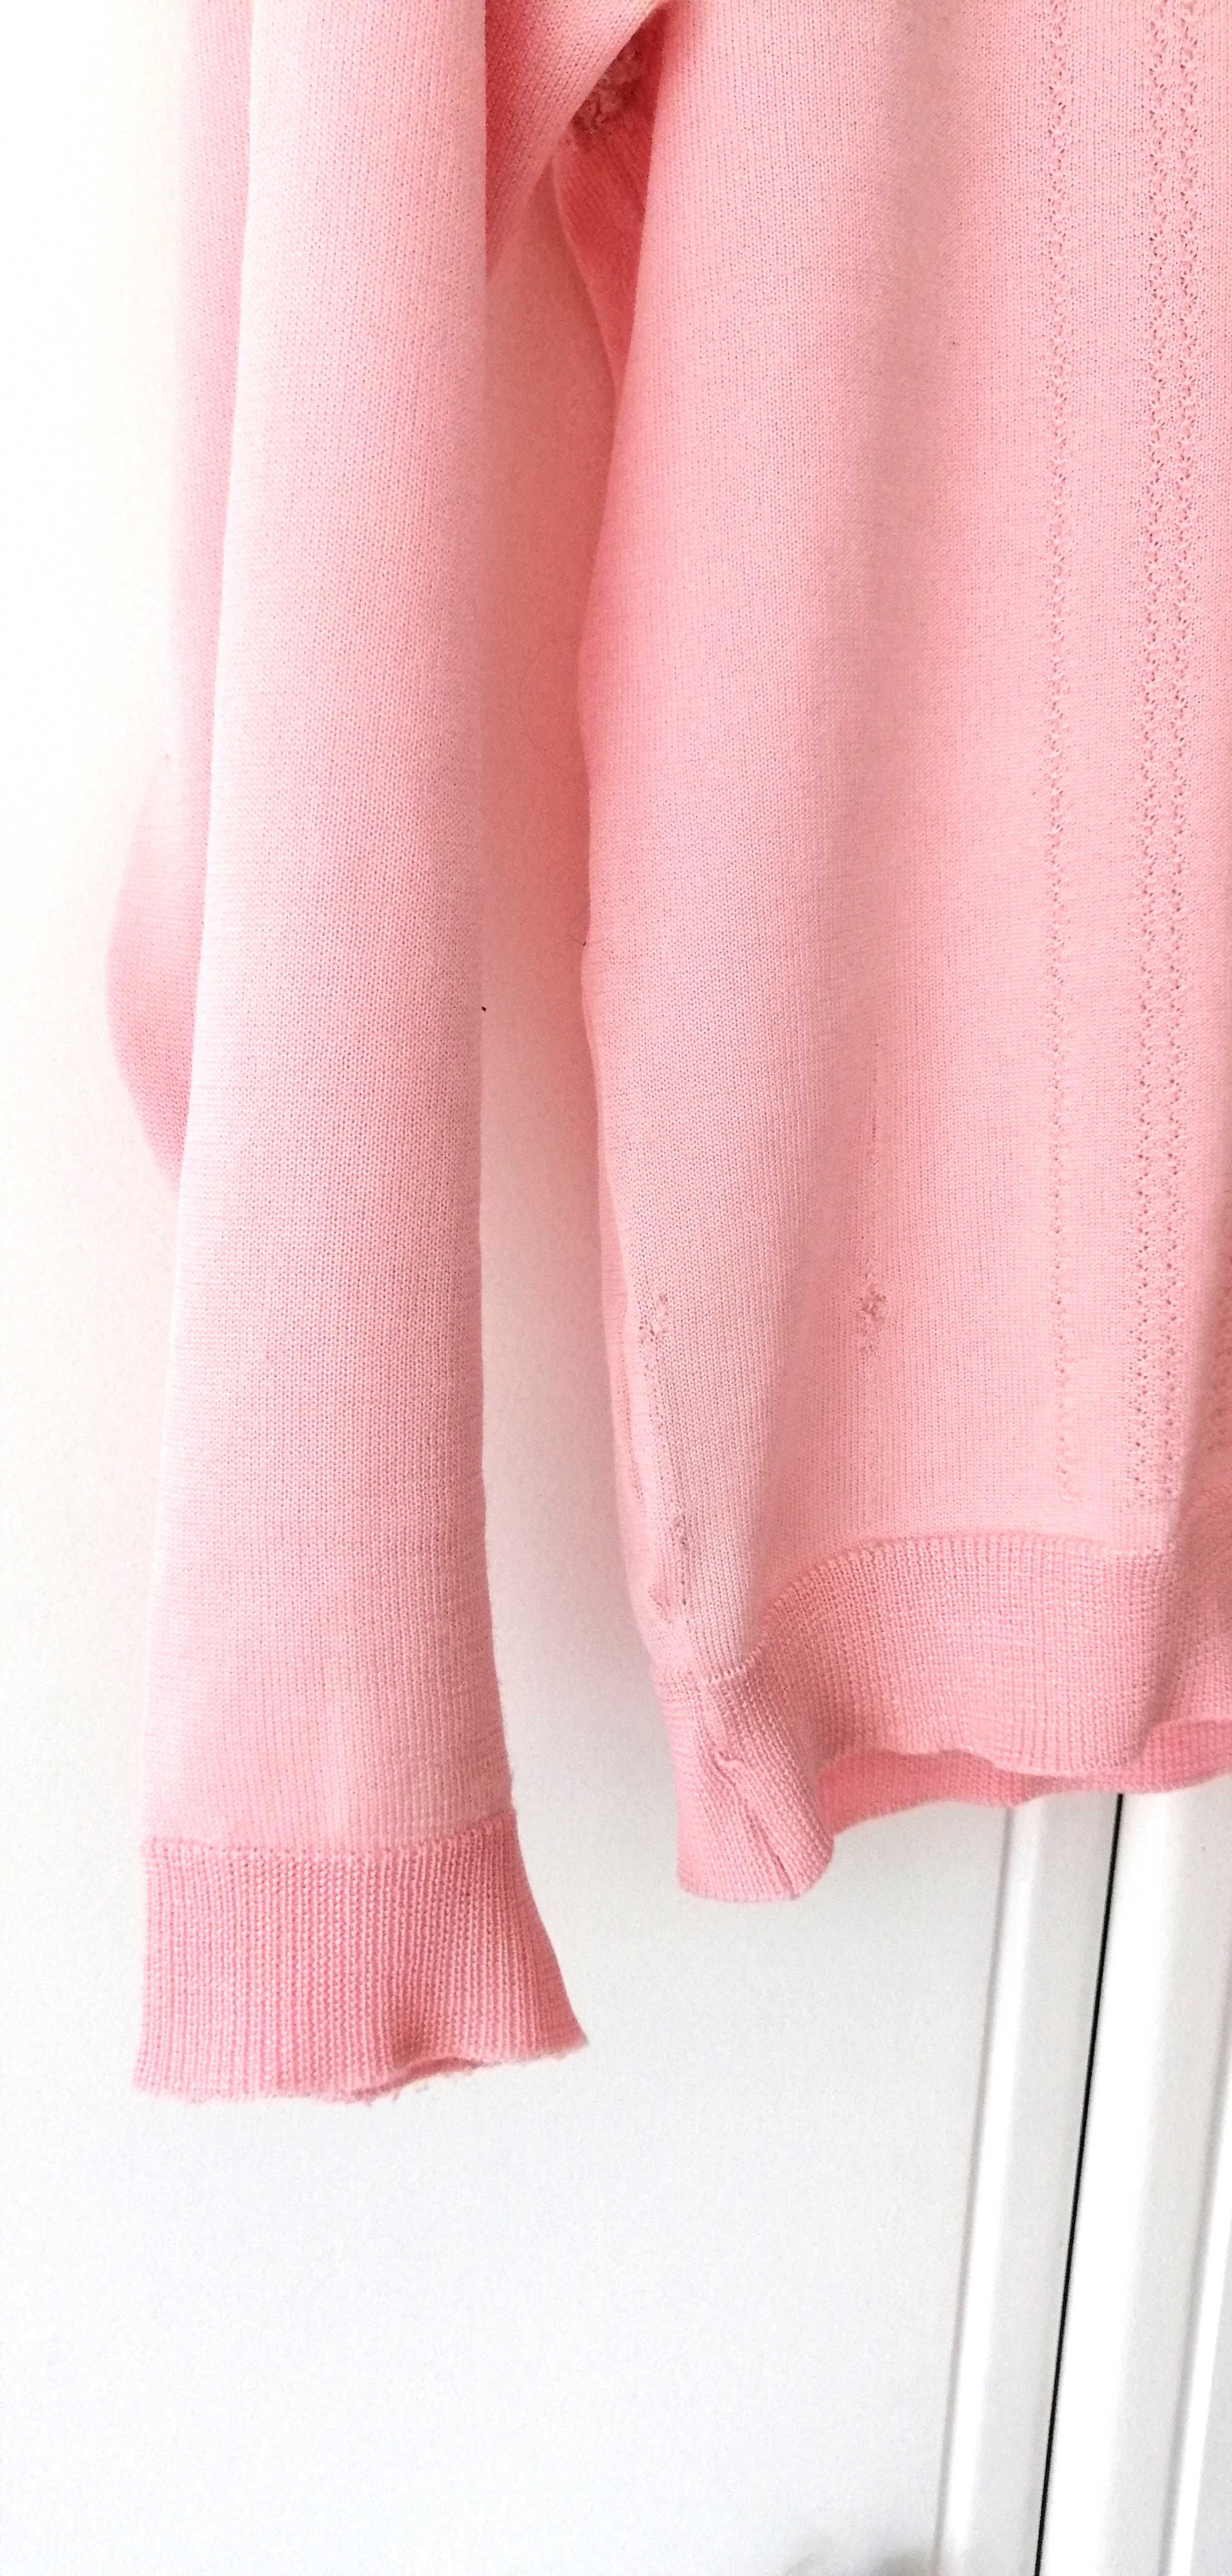 jasnoróżowy retro cienki cieniutki sweterek vintage lata 60te pudrowy